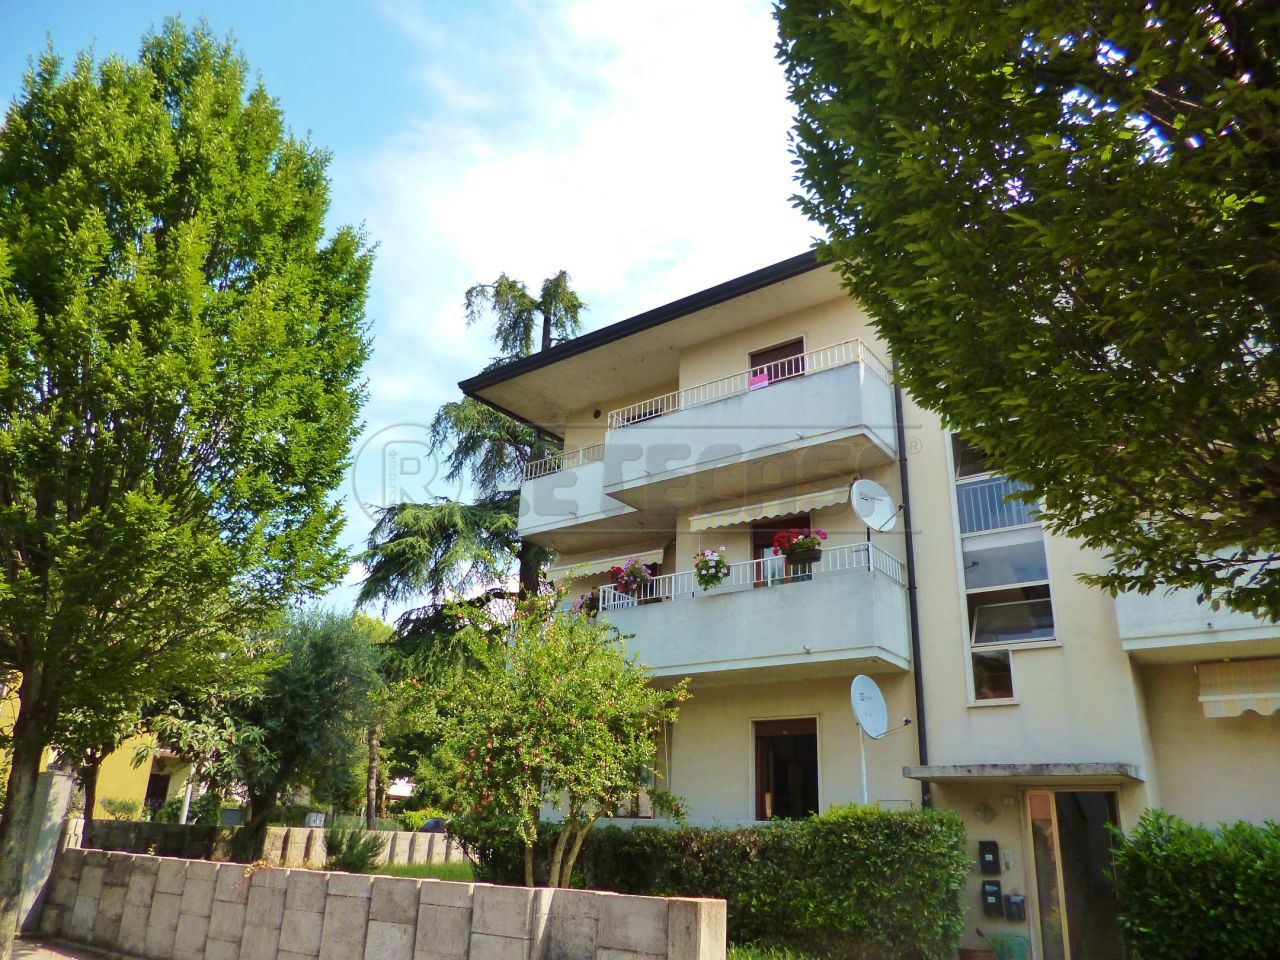 Appartamento con giardino in via cederle 1, Montebello Vicentino